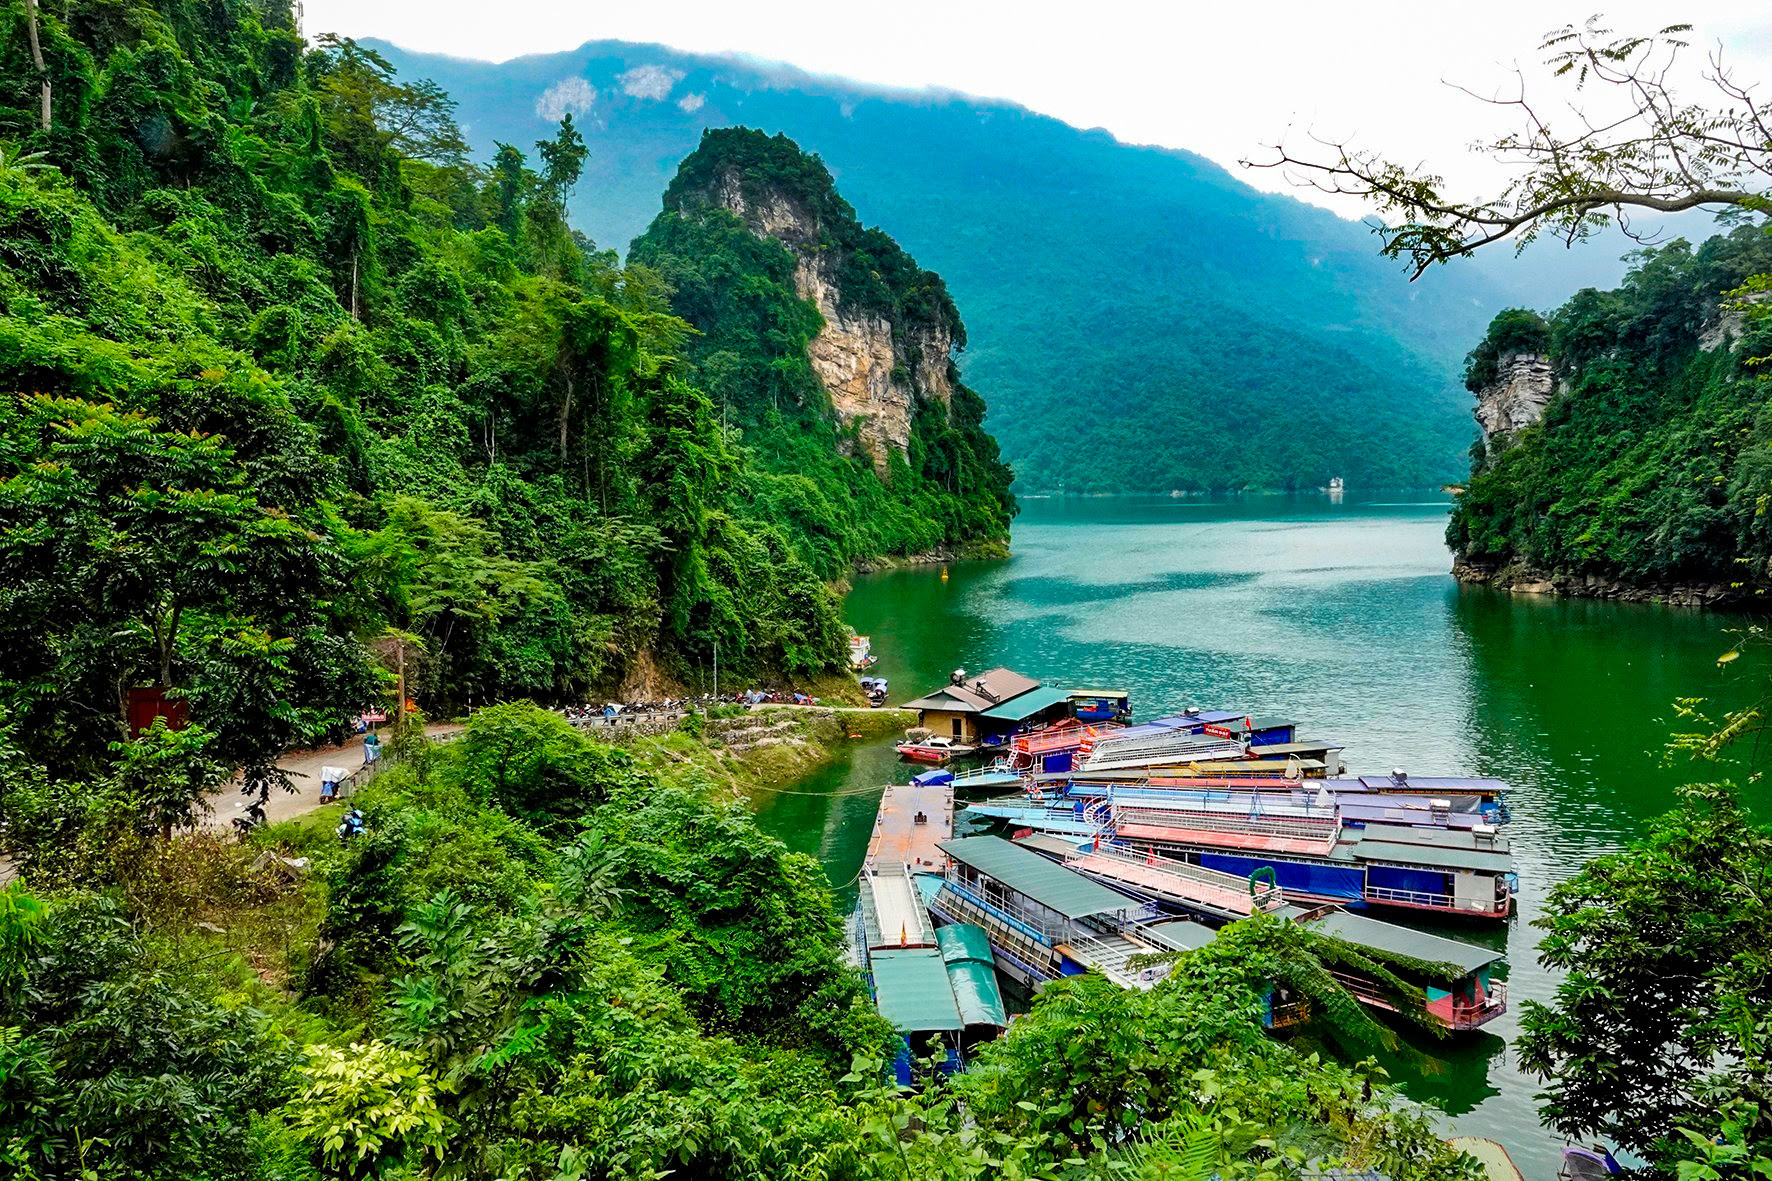 Hồ nước ngọt nhân tạo lớn nhất Tuyên Quang hiện ra đẹp như phim, có ngọn thác đổ, rừng nguyên sinh - Ảnh 1.